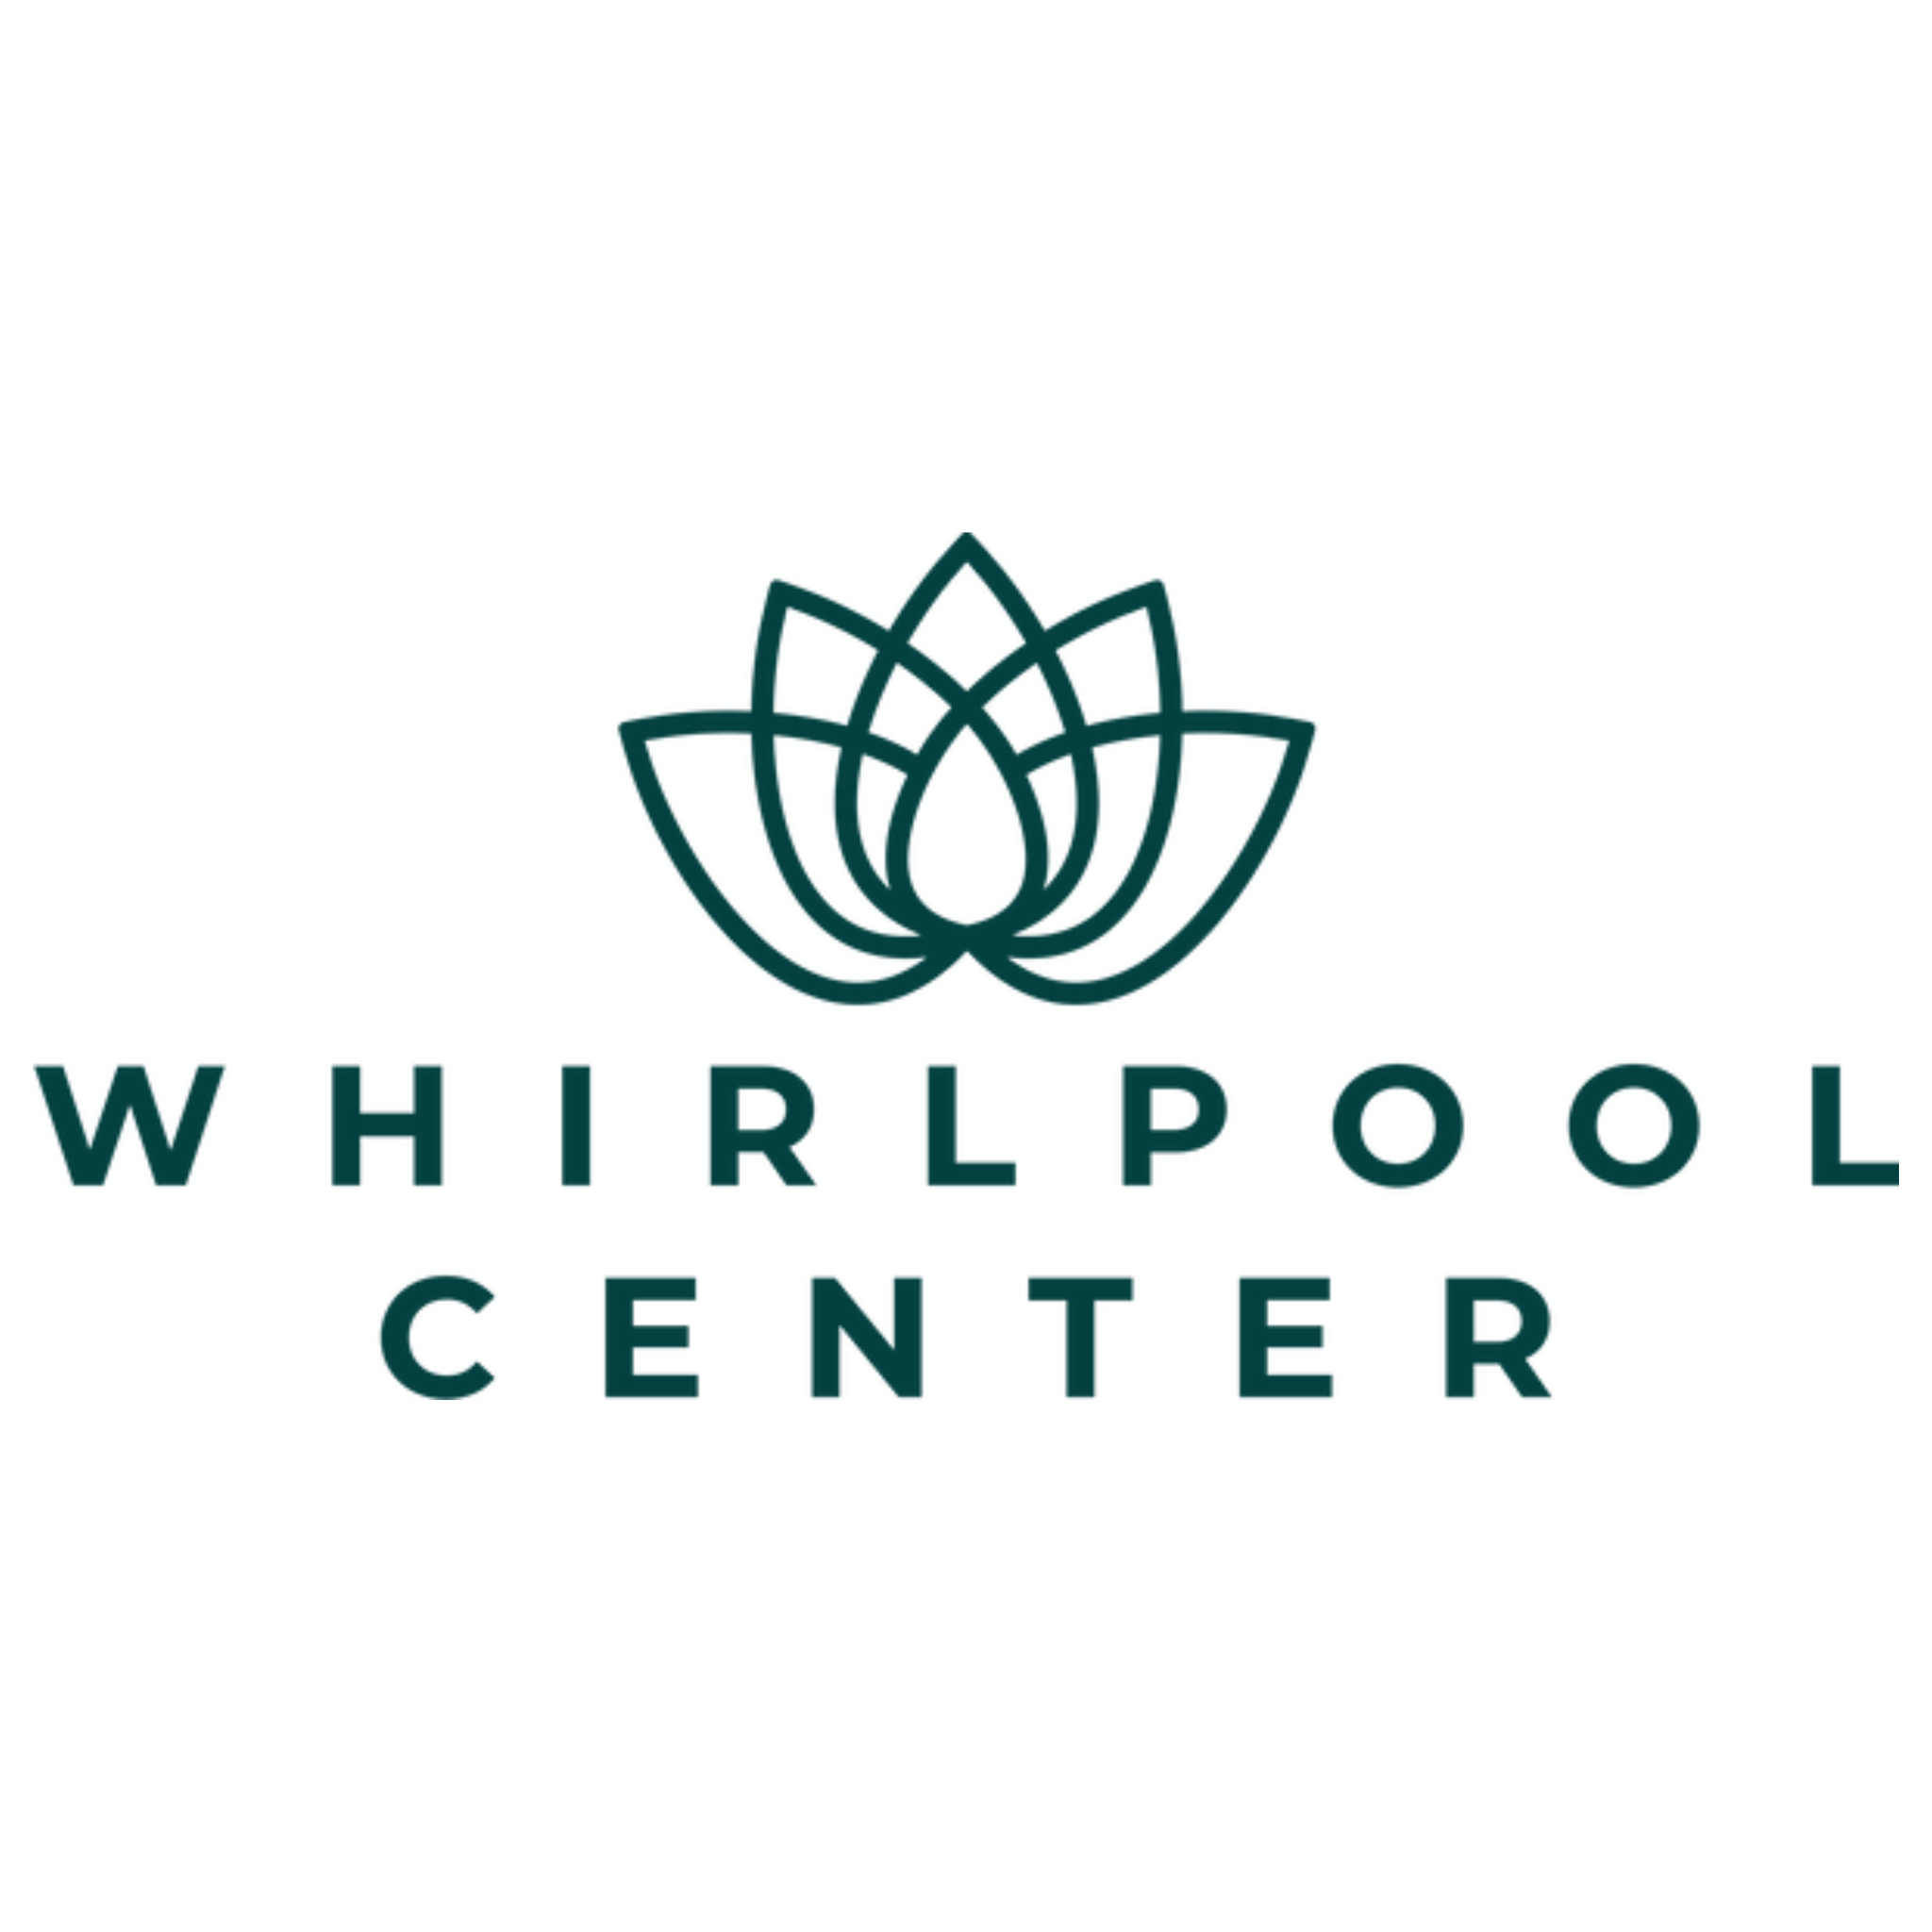 Whirlpool Center in Blankenfelde Mahlow - Logo